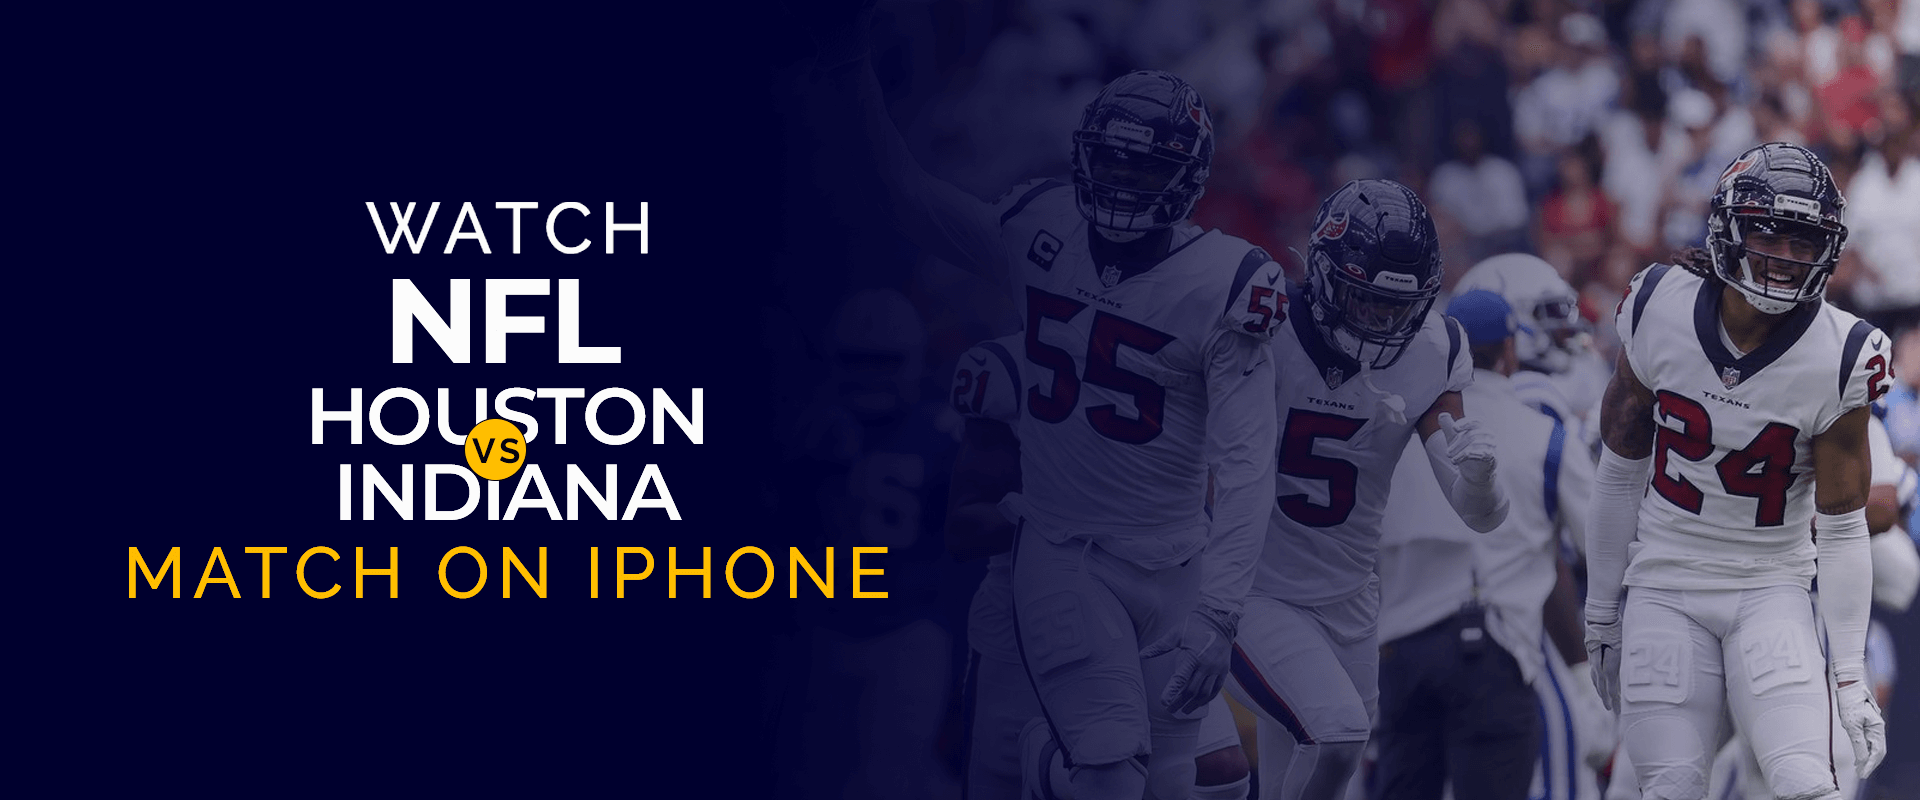 Bekijk de wedstrijd NFL Houston versus Indiana op de iPhone